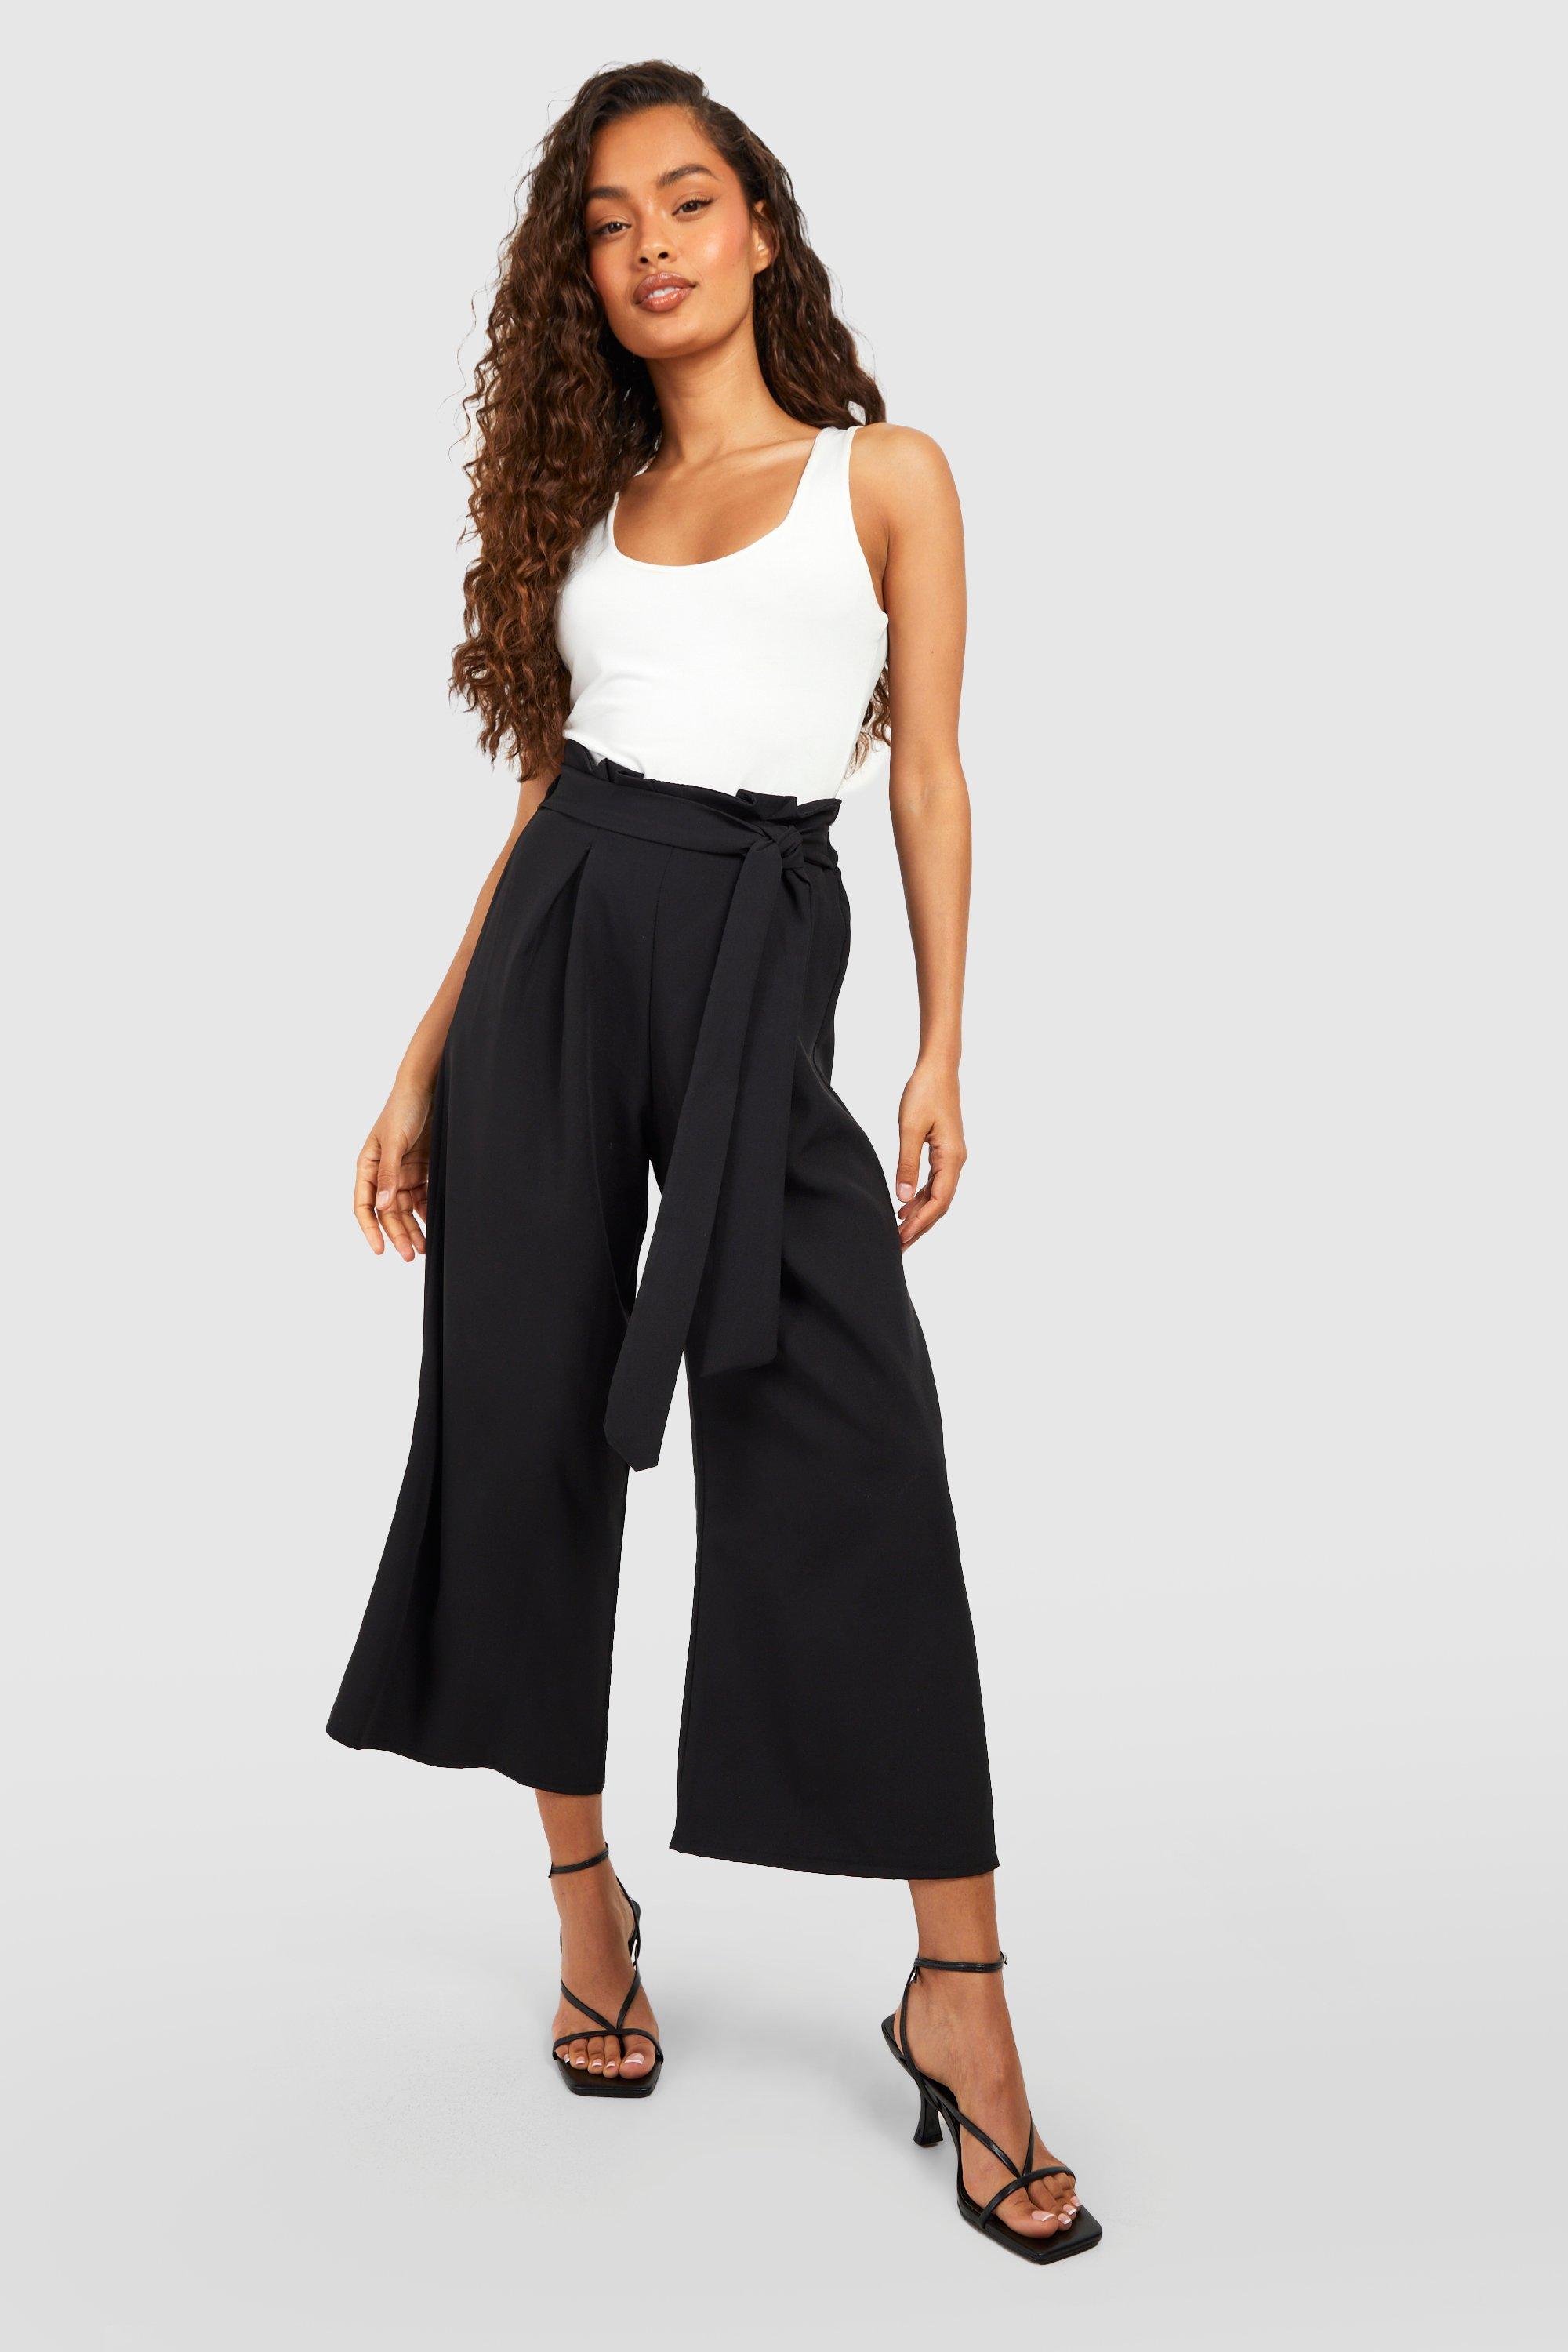 Pantalon Jupe-Culotte Paperbag Taille Haute - Noir - 34, Noir